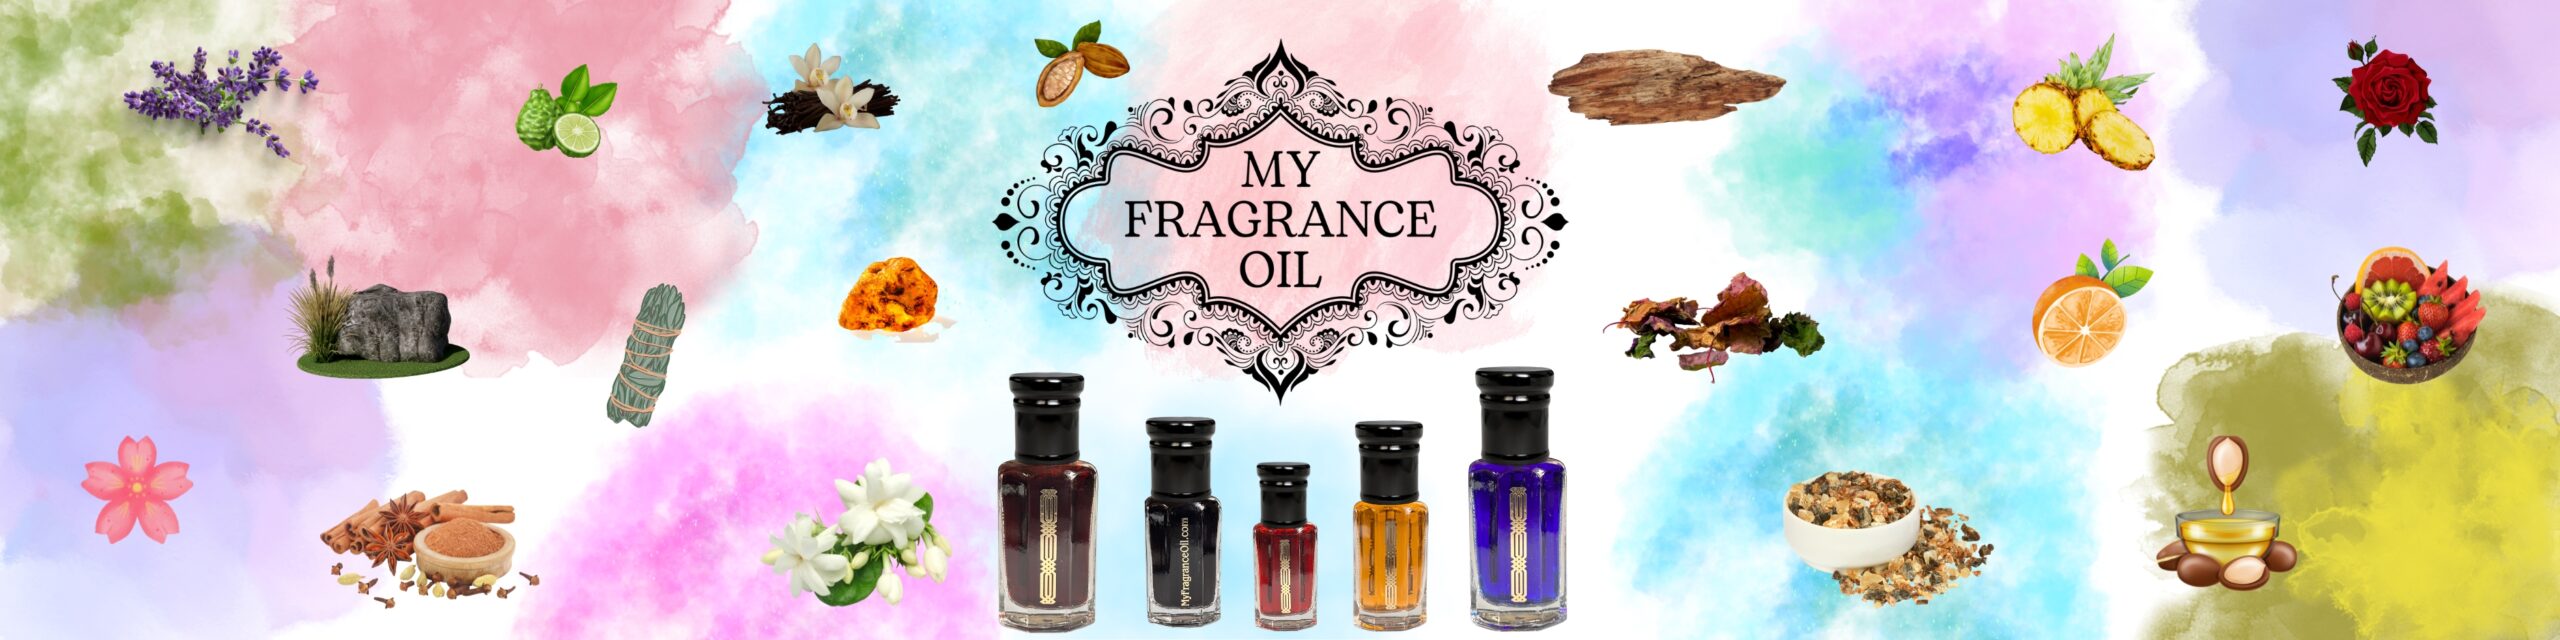 my fragrance oil banner